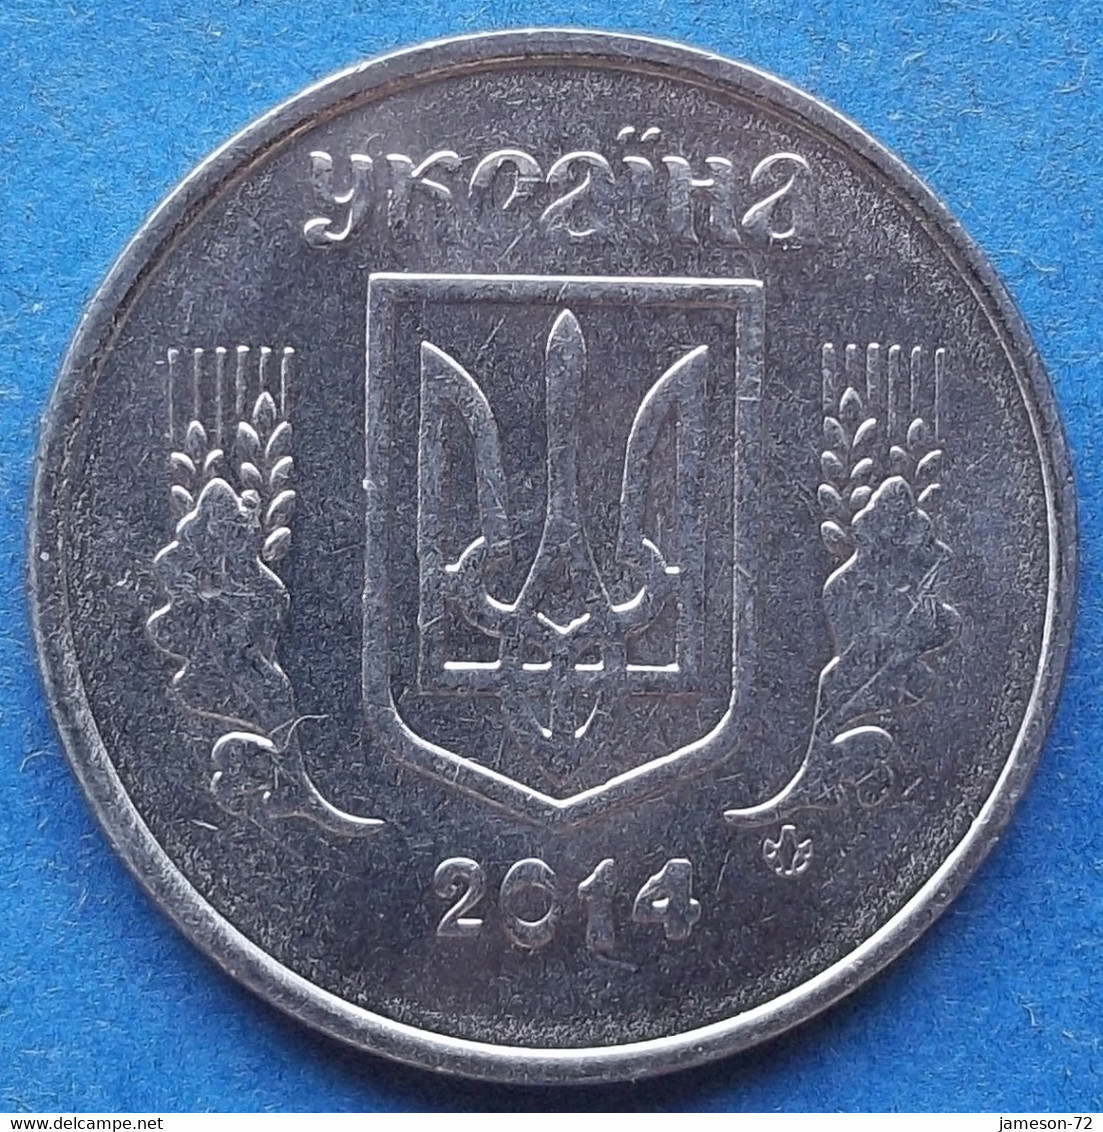 UKRAINE - 5 Kopiyok 2014 KM# 7 Reform Coinage (1996) - Edelweiss Coins - Ukraine